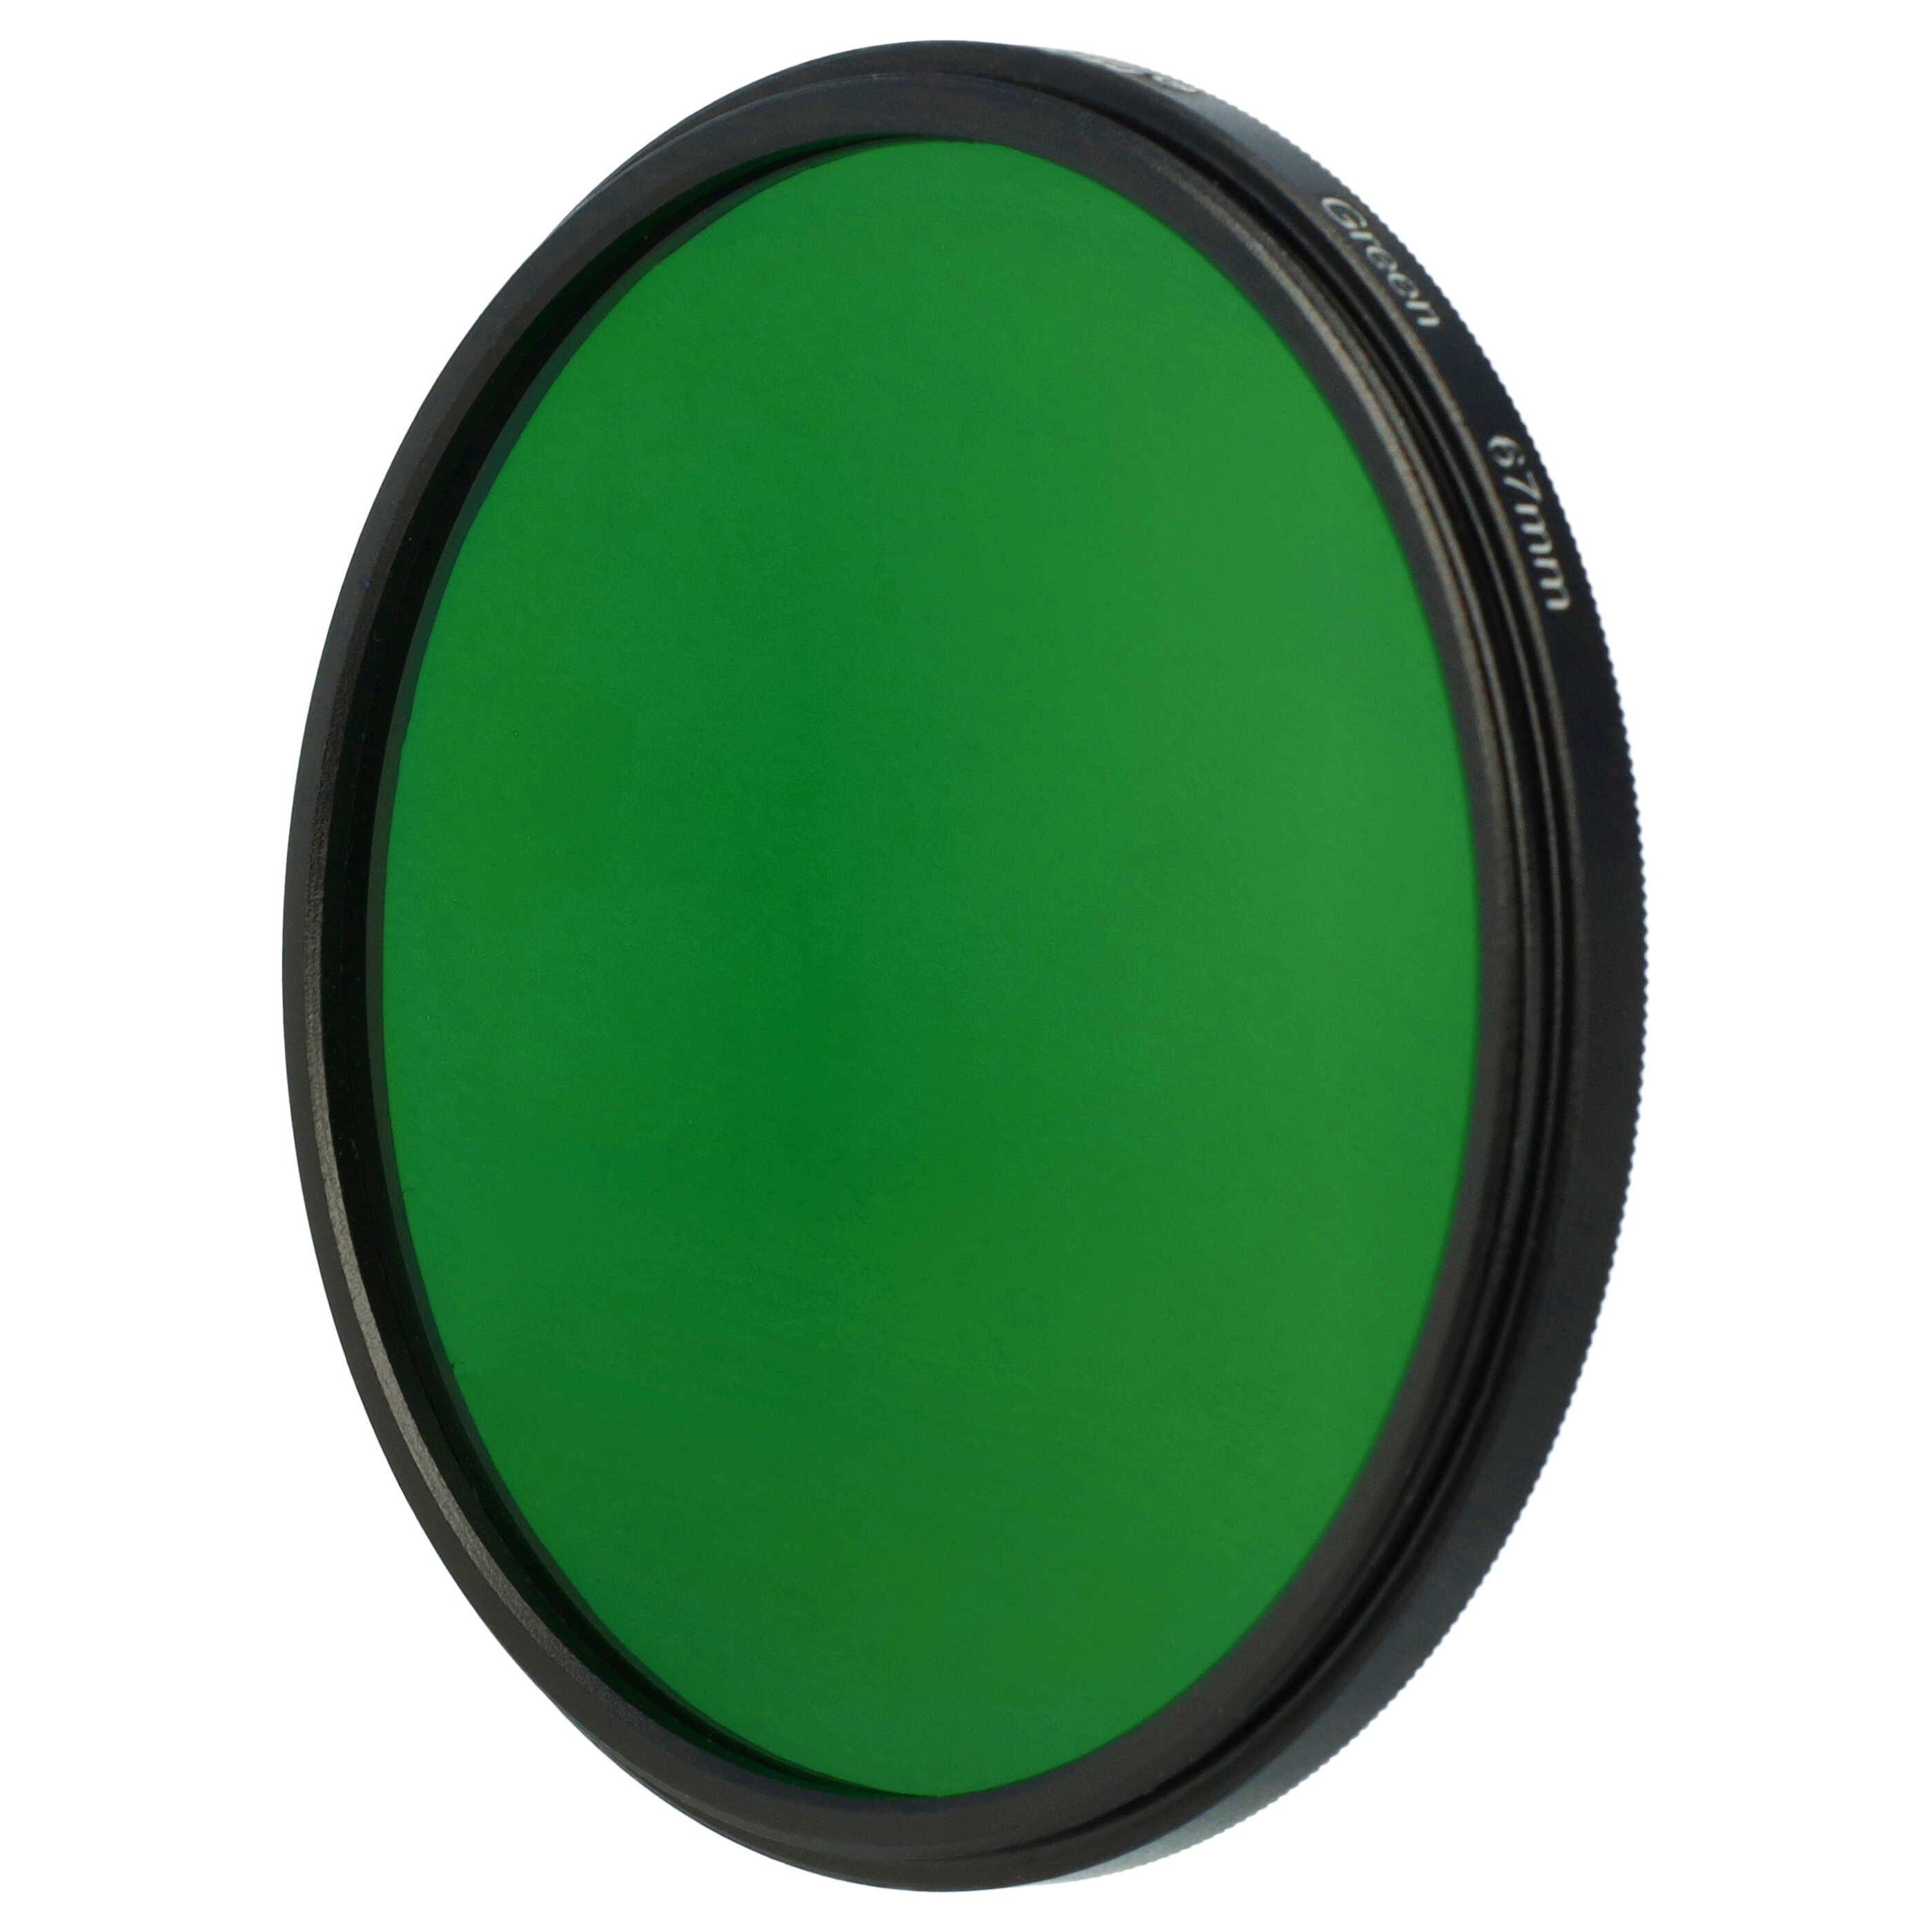 Farbfilter grün passend für Kamera Objektive mit 67 mm Filtergewinde - Grünfilter